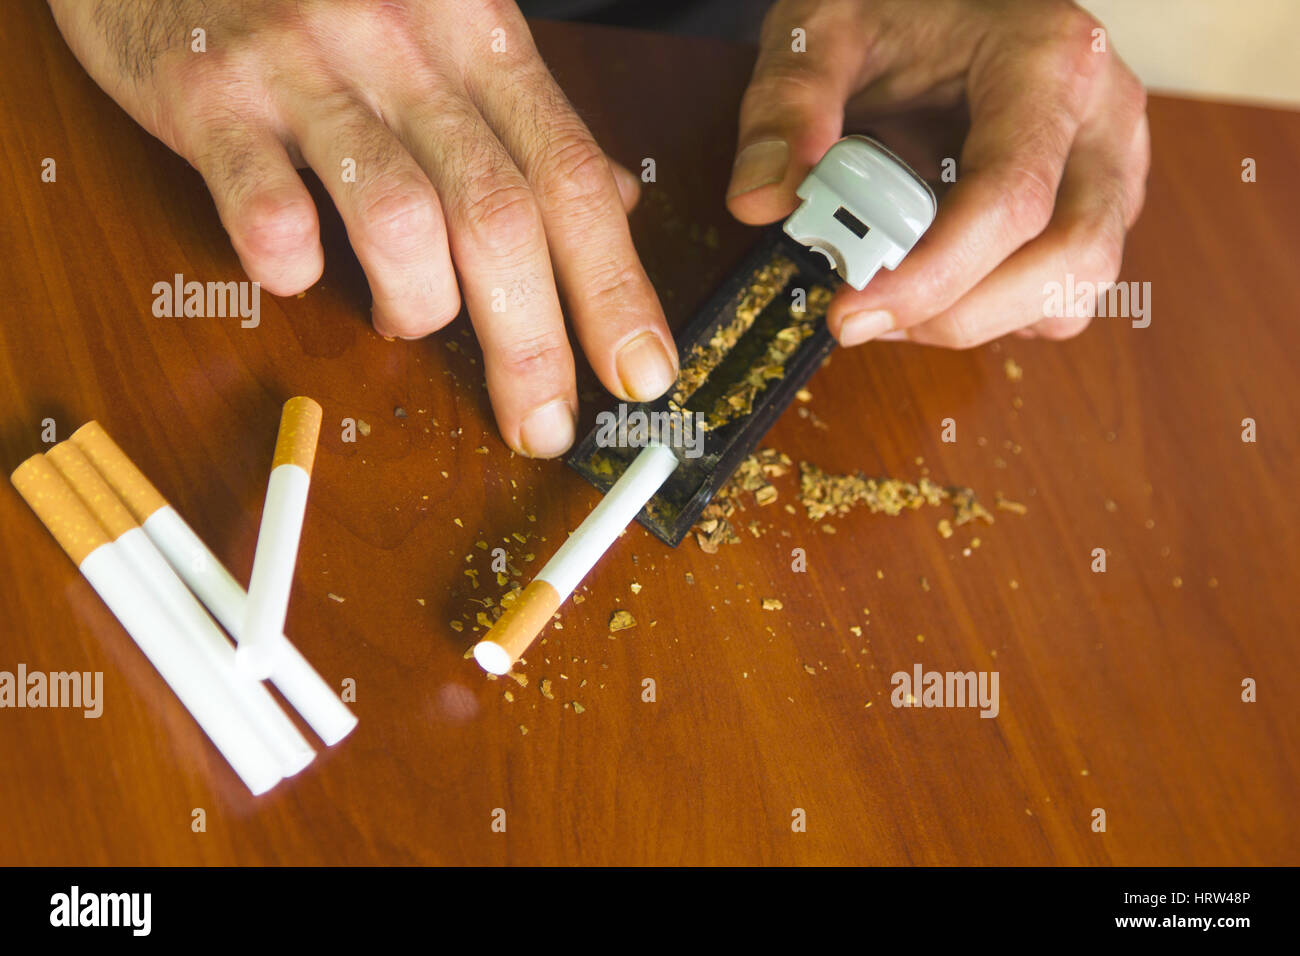 El hombre rodante con cigarrillos de tabaco fresca Foto de stock